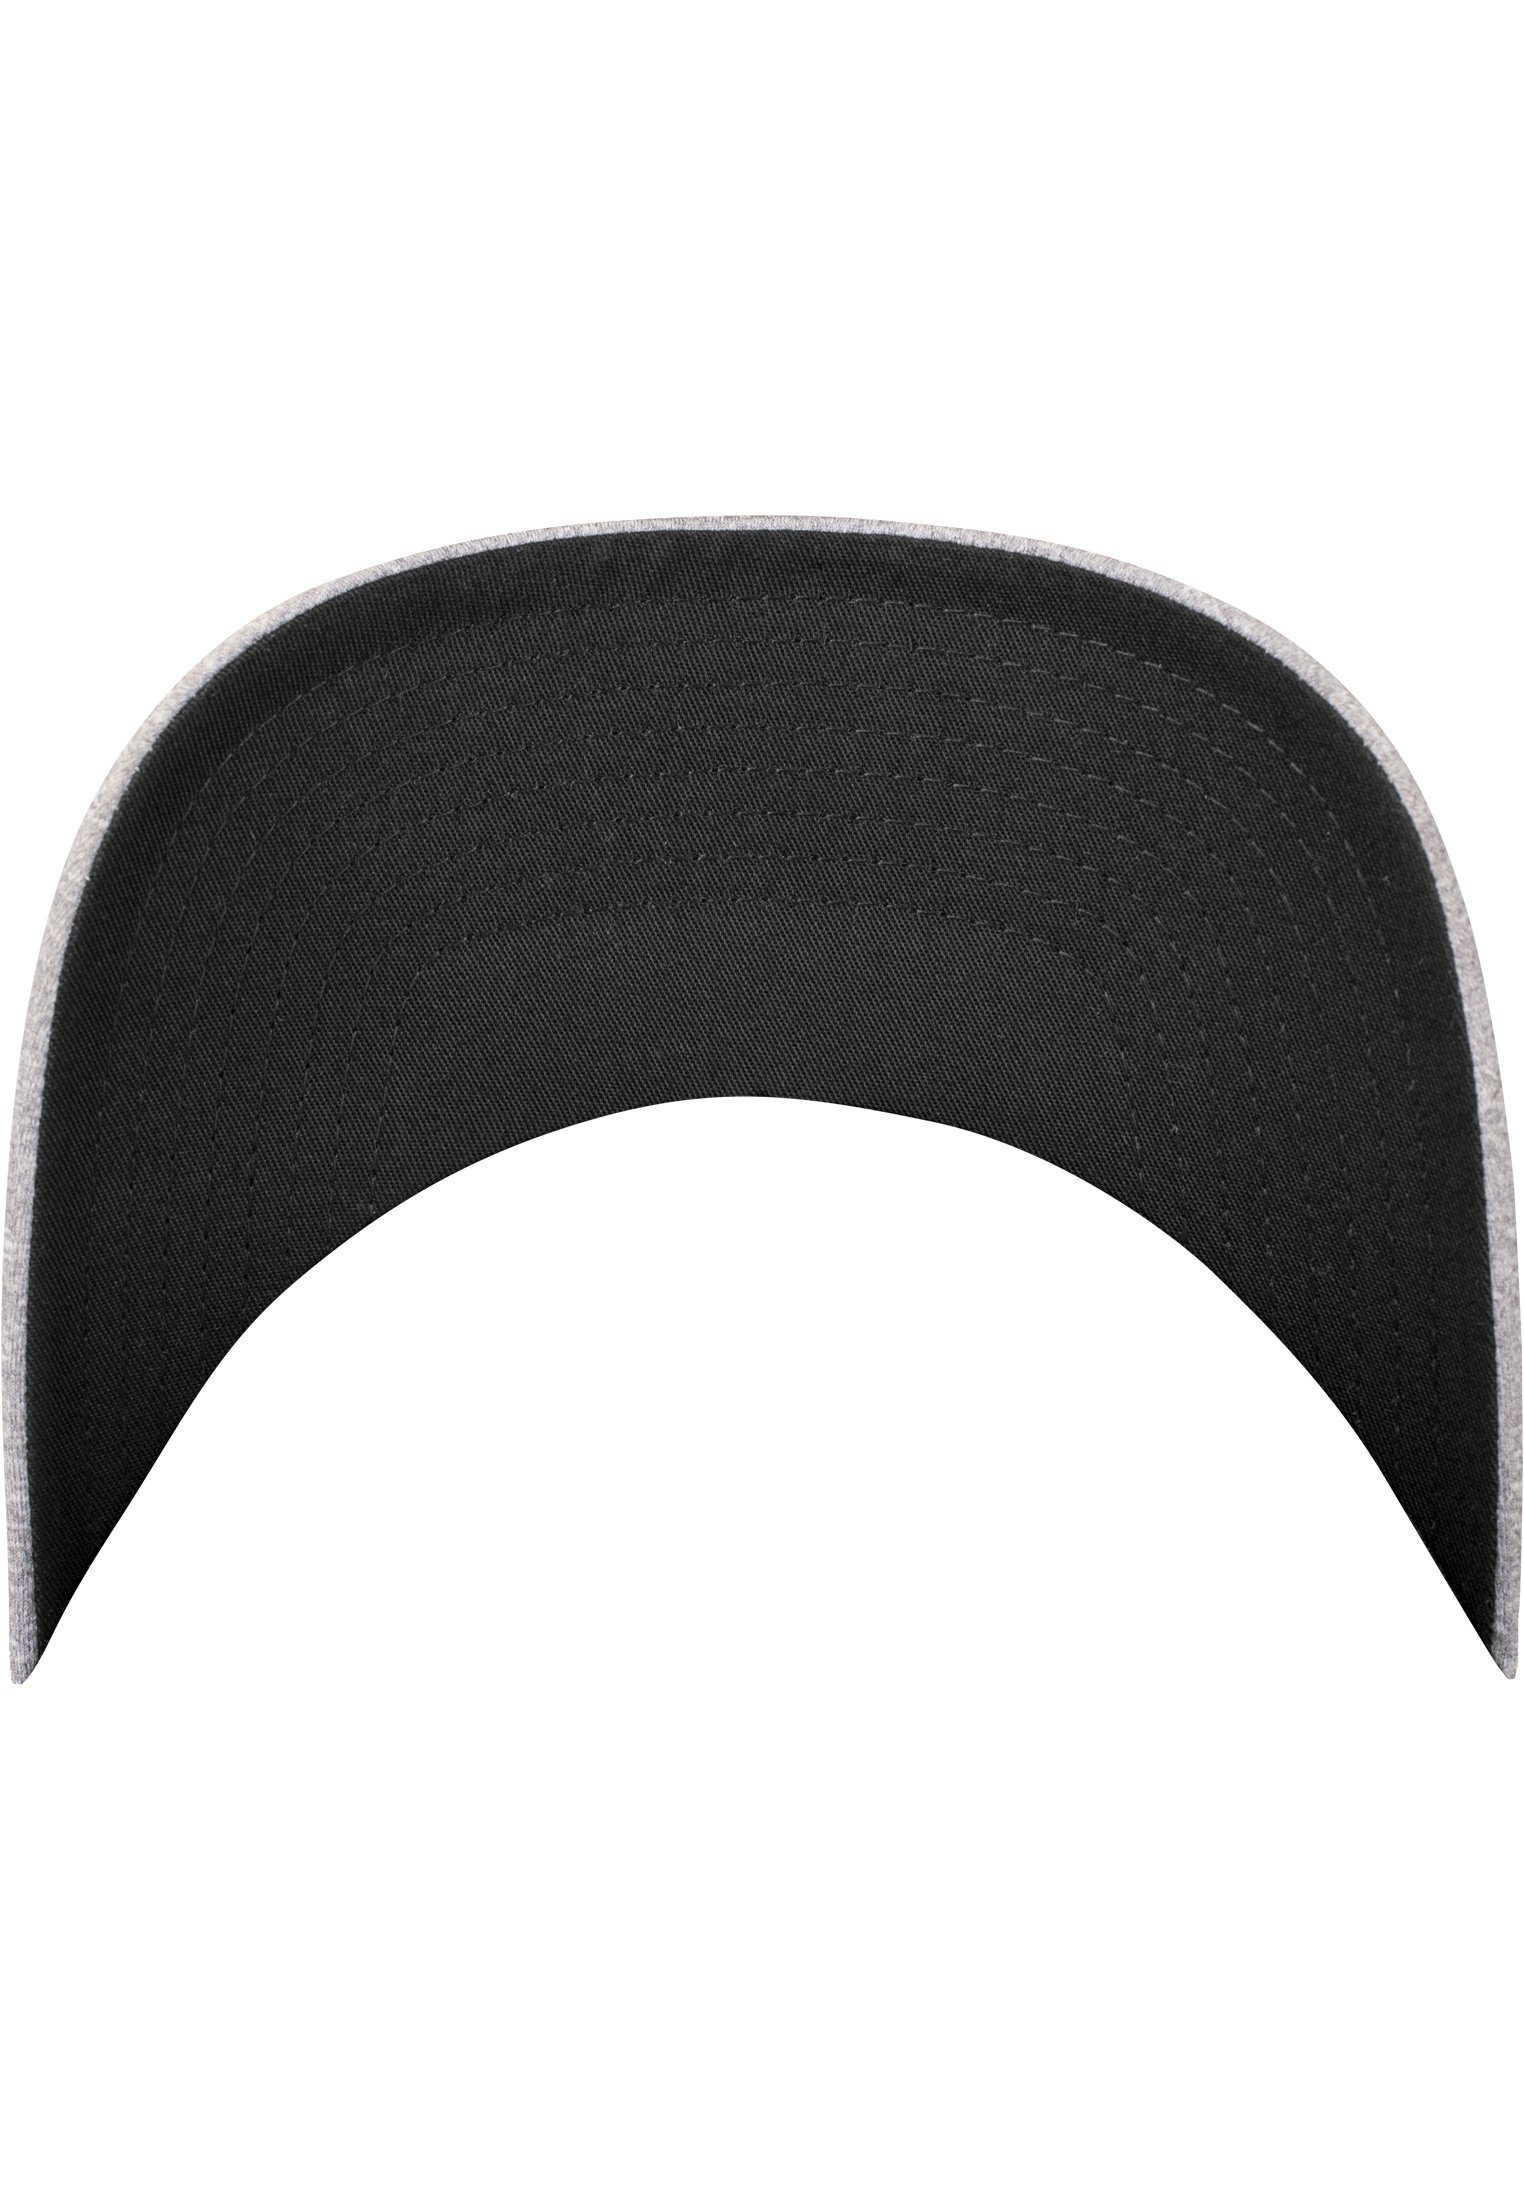 Accessoires heather/black Cap Mesh Flex Melange Flexfit Flexfit